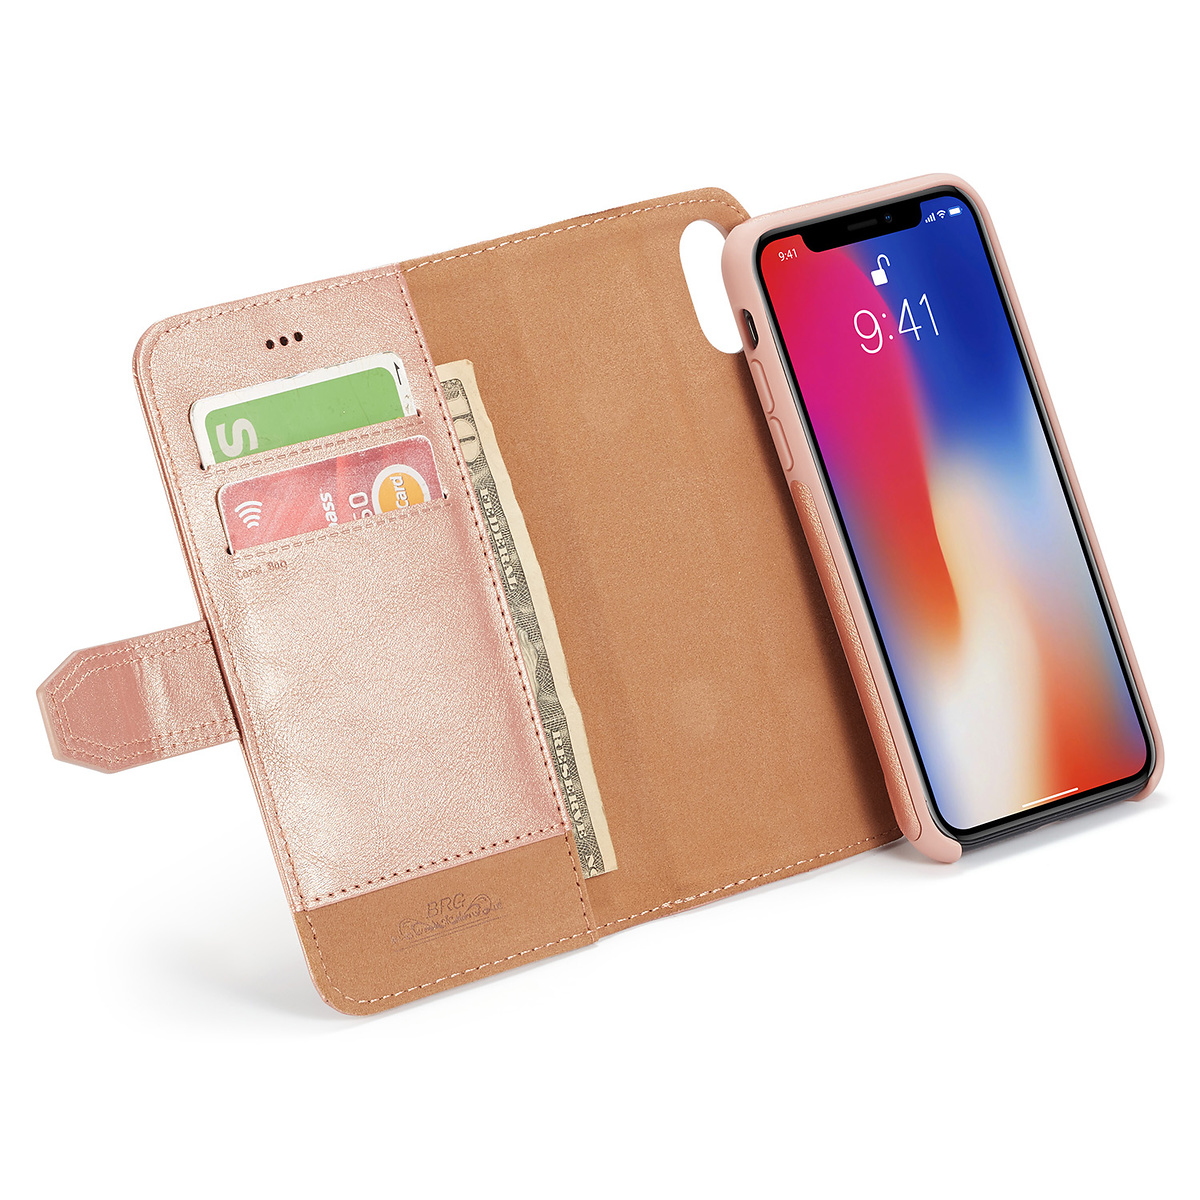 BRG Luxury plånboksfodral med ställ till iPhone XS Max, rosa